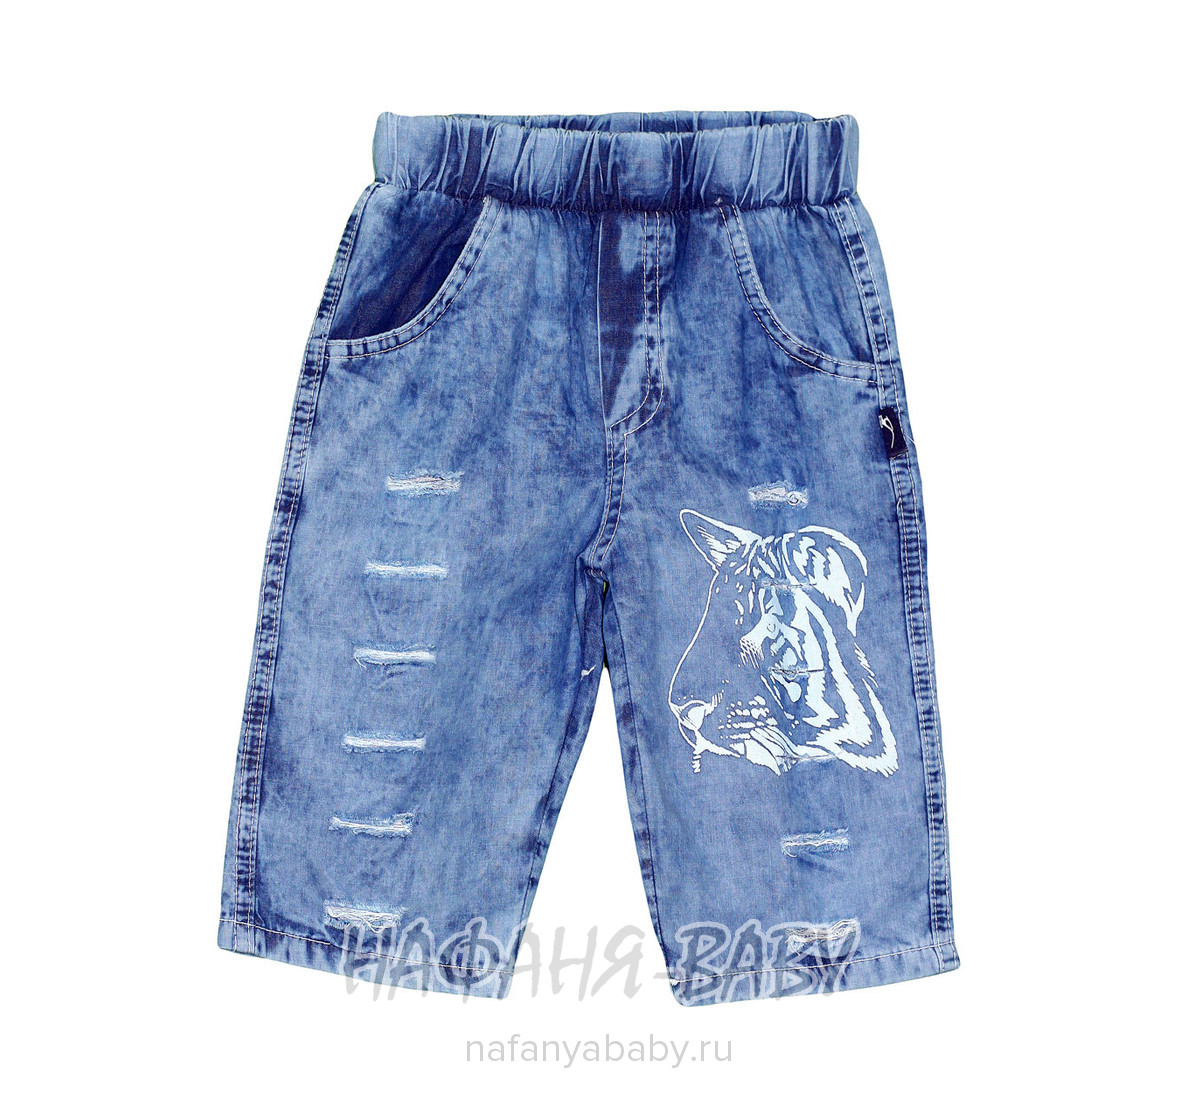 Детские джинсовые шорты AKIRA арт: 2686, 1-4 года, оптом Турция